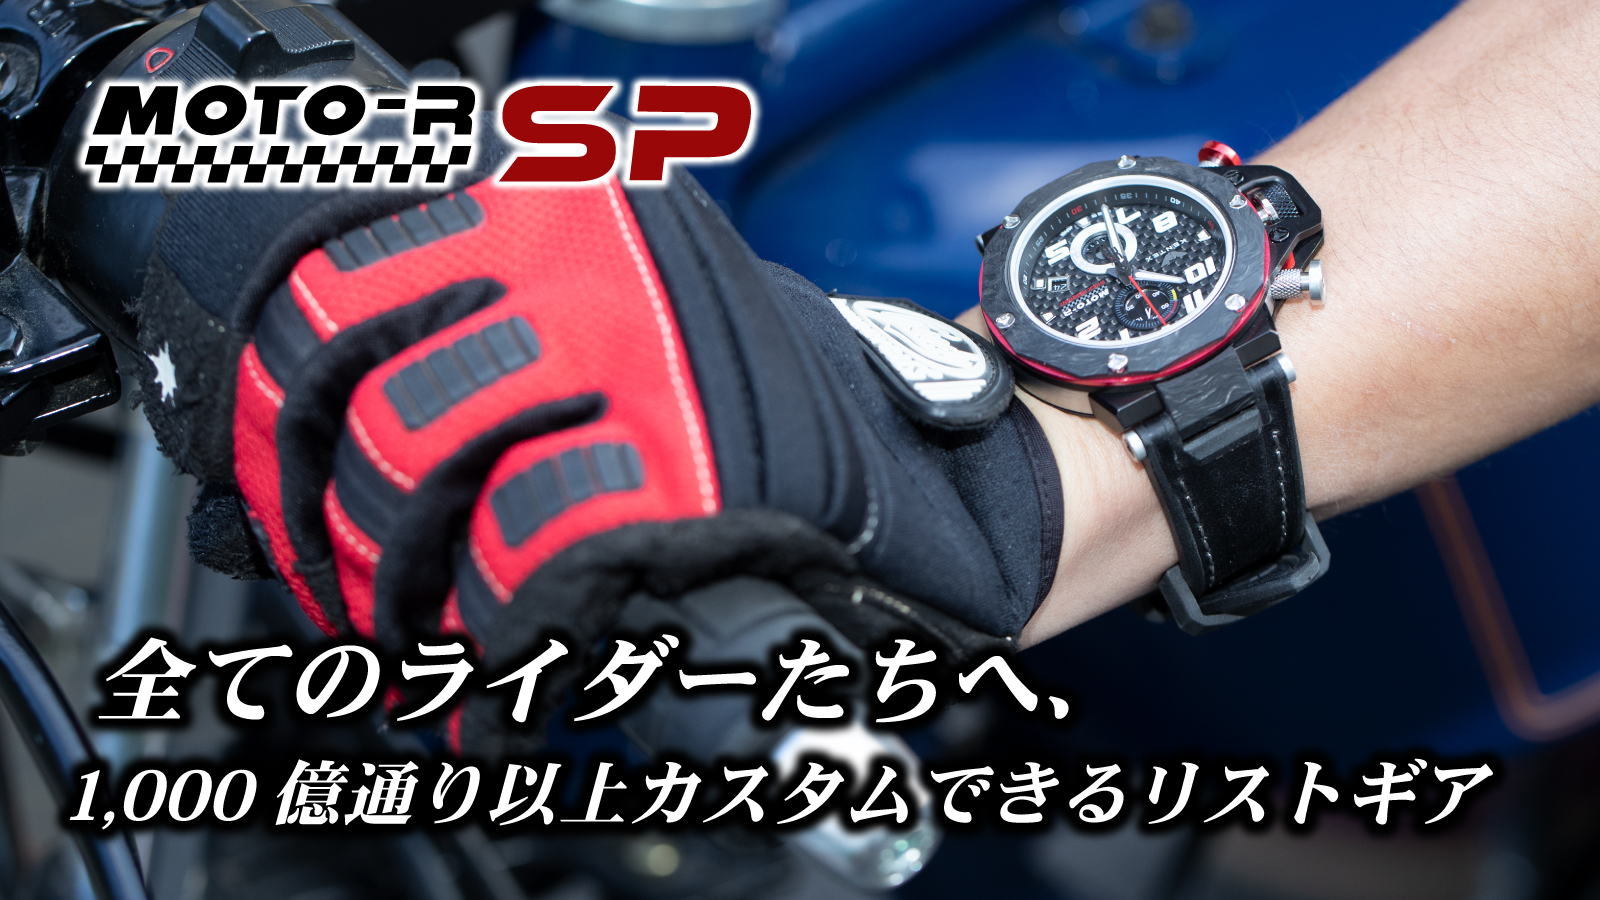 カスタムできるバイクライダー用時計 Moto R Sp モトアールエスピー ケンテックスのプレスリリース